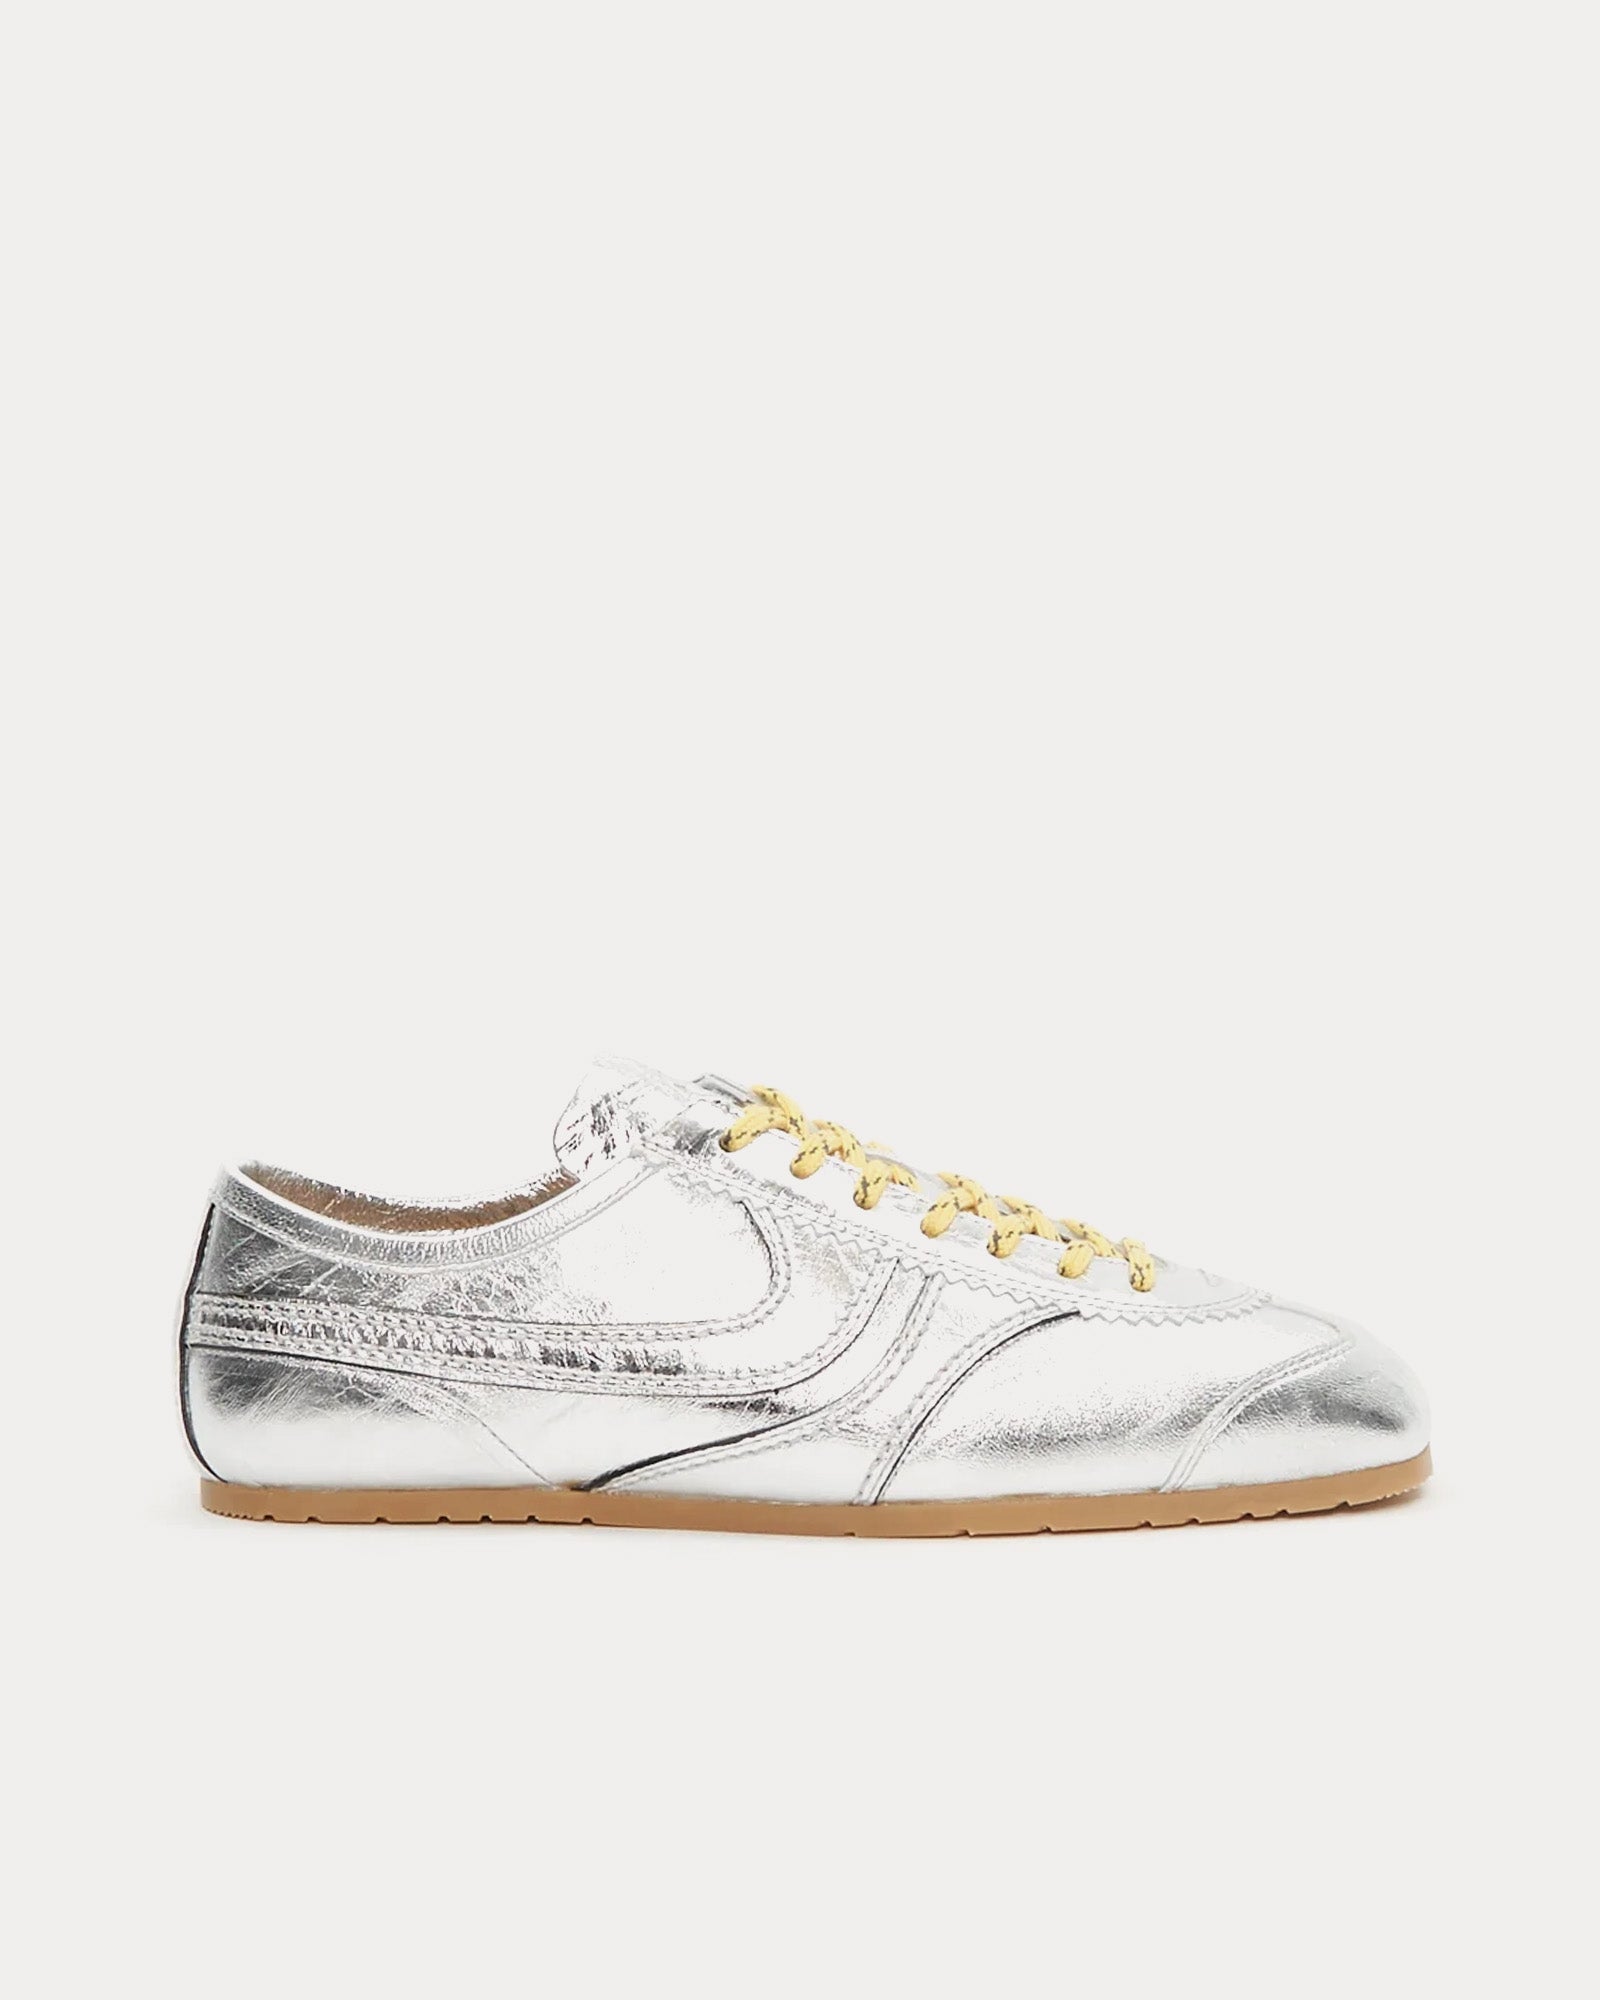 Dries Van Noten - 70's Leather Silver Low Top Sneakers